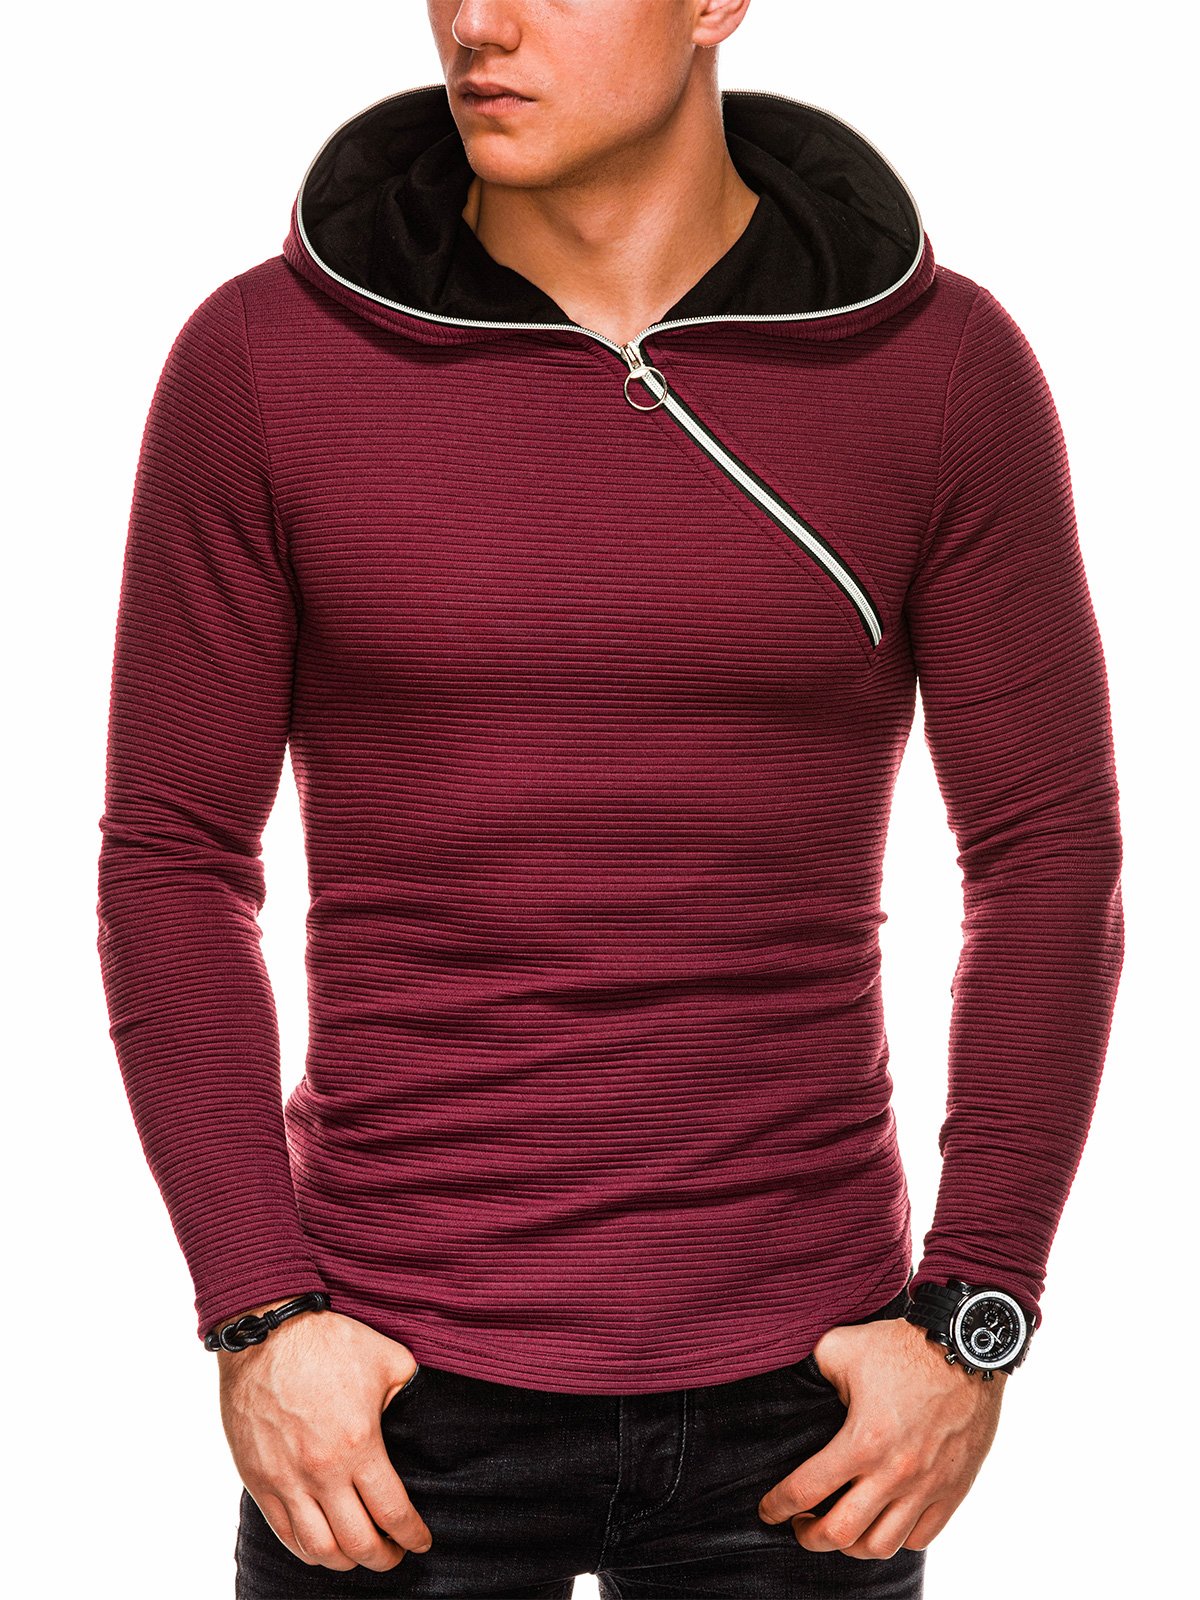 Men's hooded sweatshirt B1020 - dark red | MODONE wholesale - Clothing ...